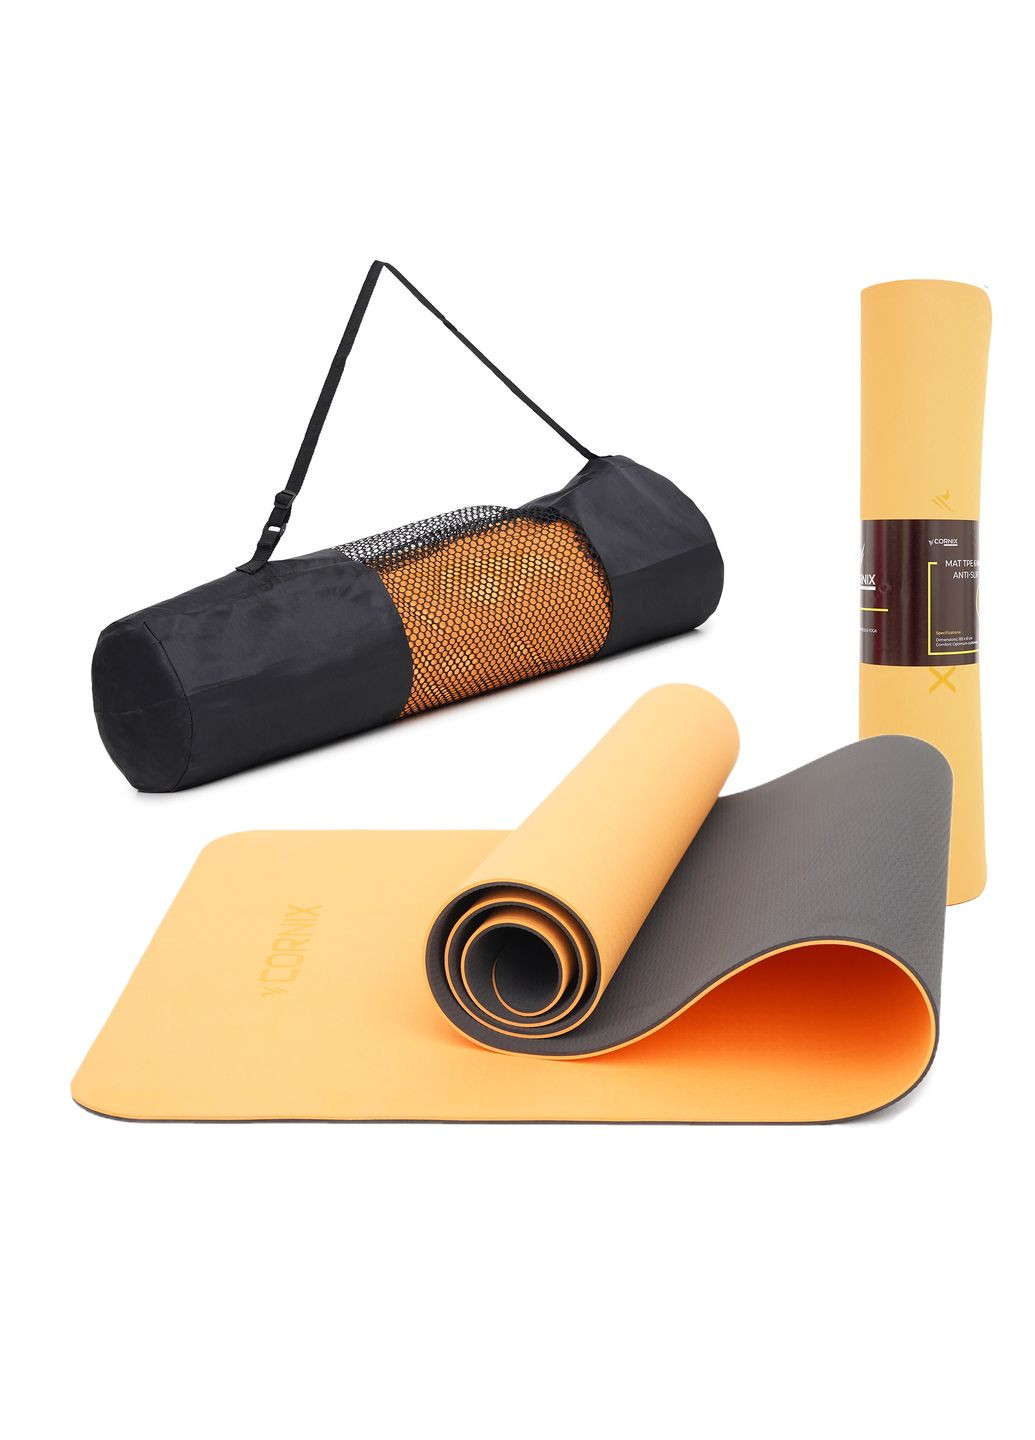 Килимок спортивний TPE 183 x 61 x 0.6 см для йоги та фітнесу XR0001 Orange/Black Cornix xr-0001 (275654235)